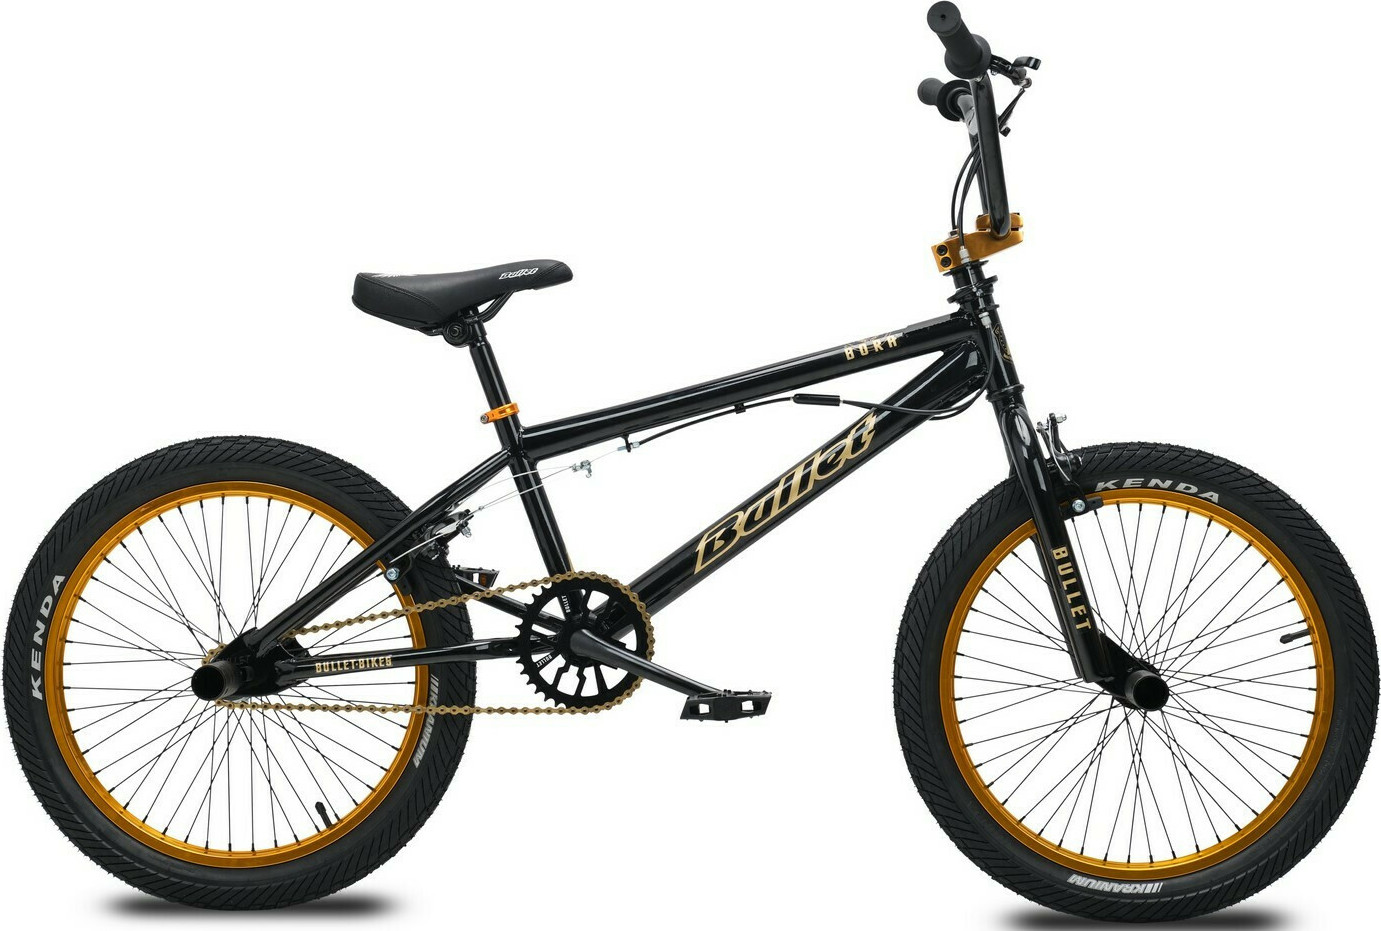 Pedigree Punctuation Janice Bullet Bora 20" Μαύρο/Χρυσό Ποδήλατο BMX χωρίς Ταχύτητες | Skroutz.gr